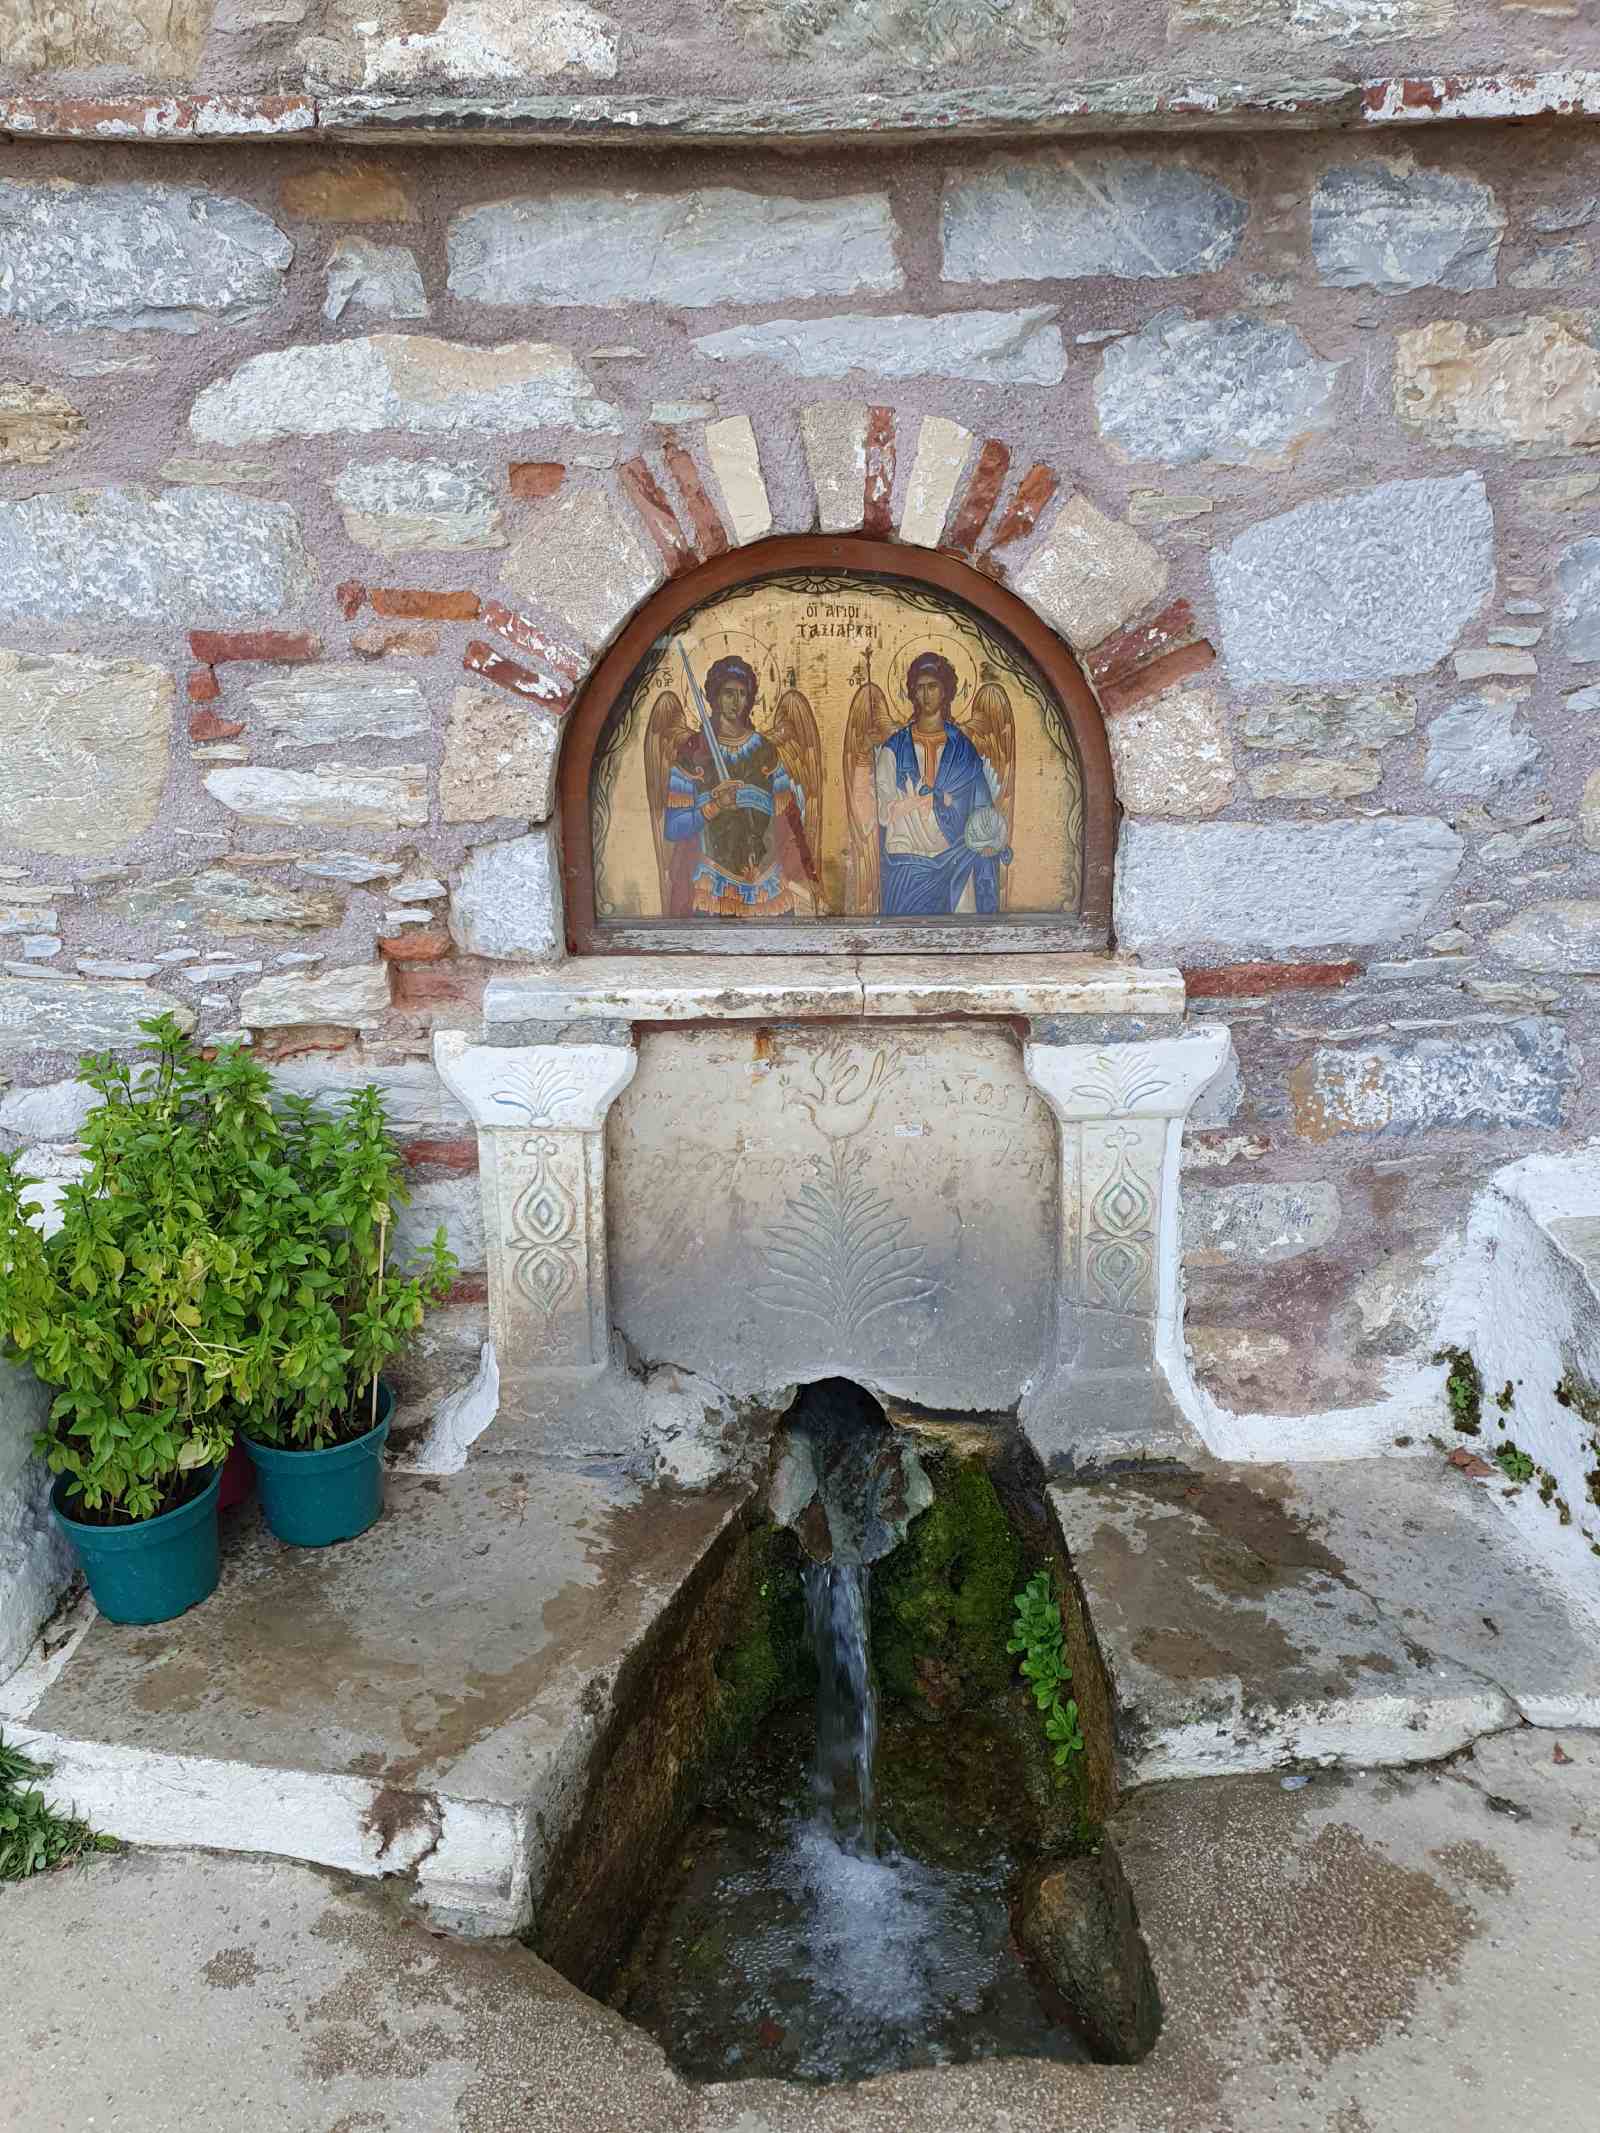 Agios (Saint) Taxiarchis